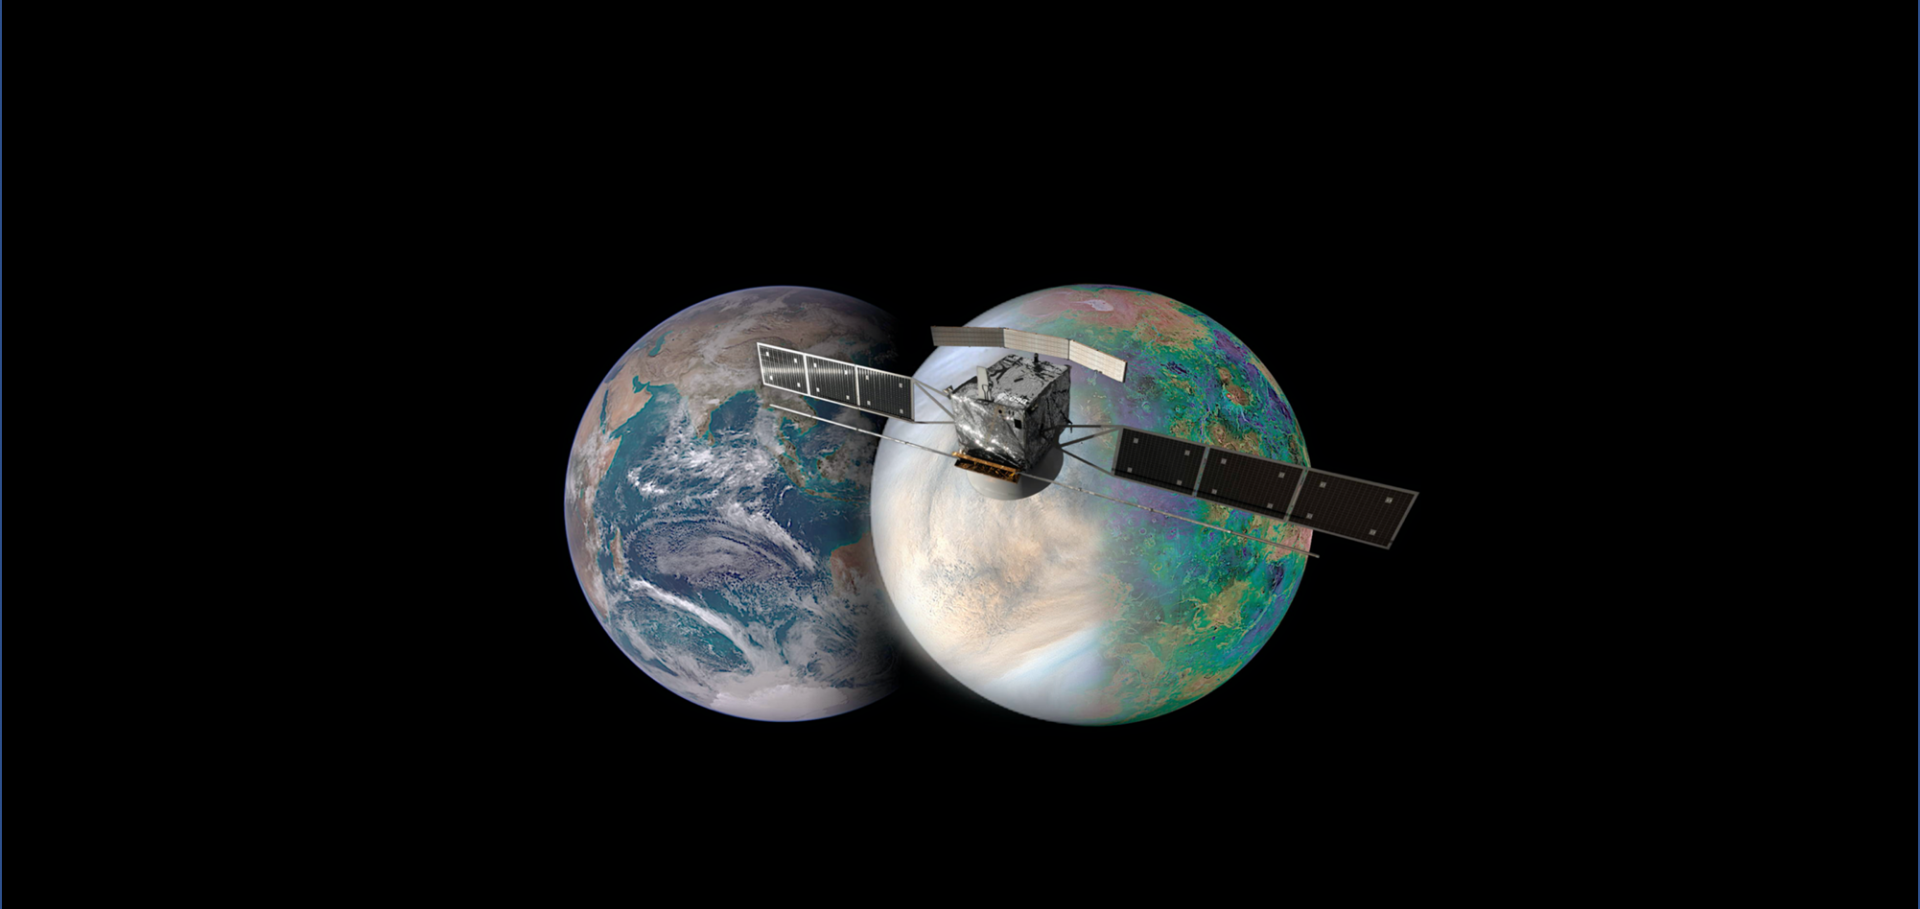 The EnVision Venus orbiter mission, proposed to ESA